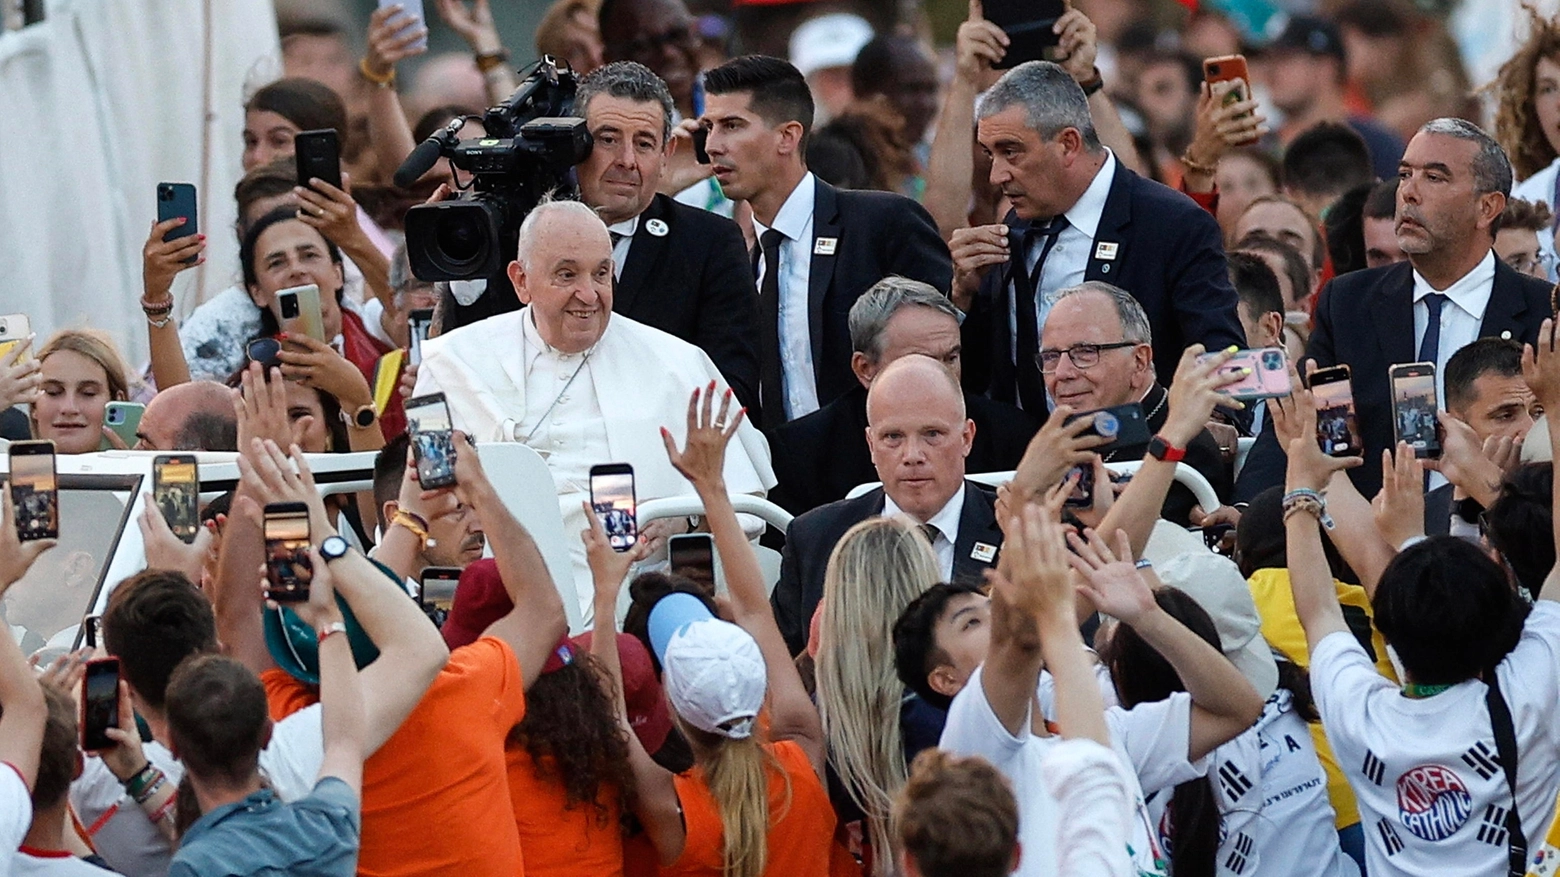 La diplomatie populaire du pape François. Editorial d'Andrea Riccardi paru dans Avvenire